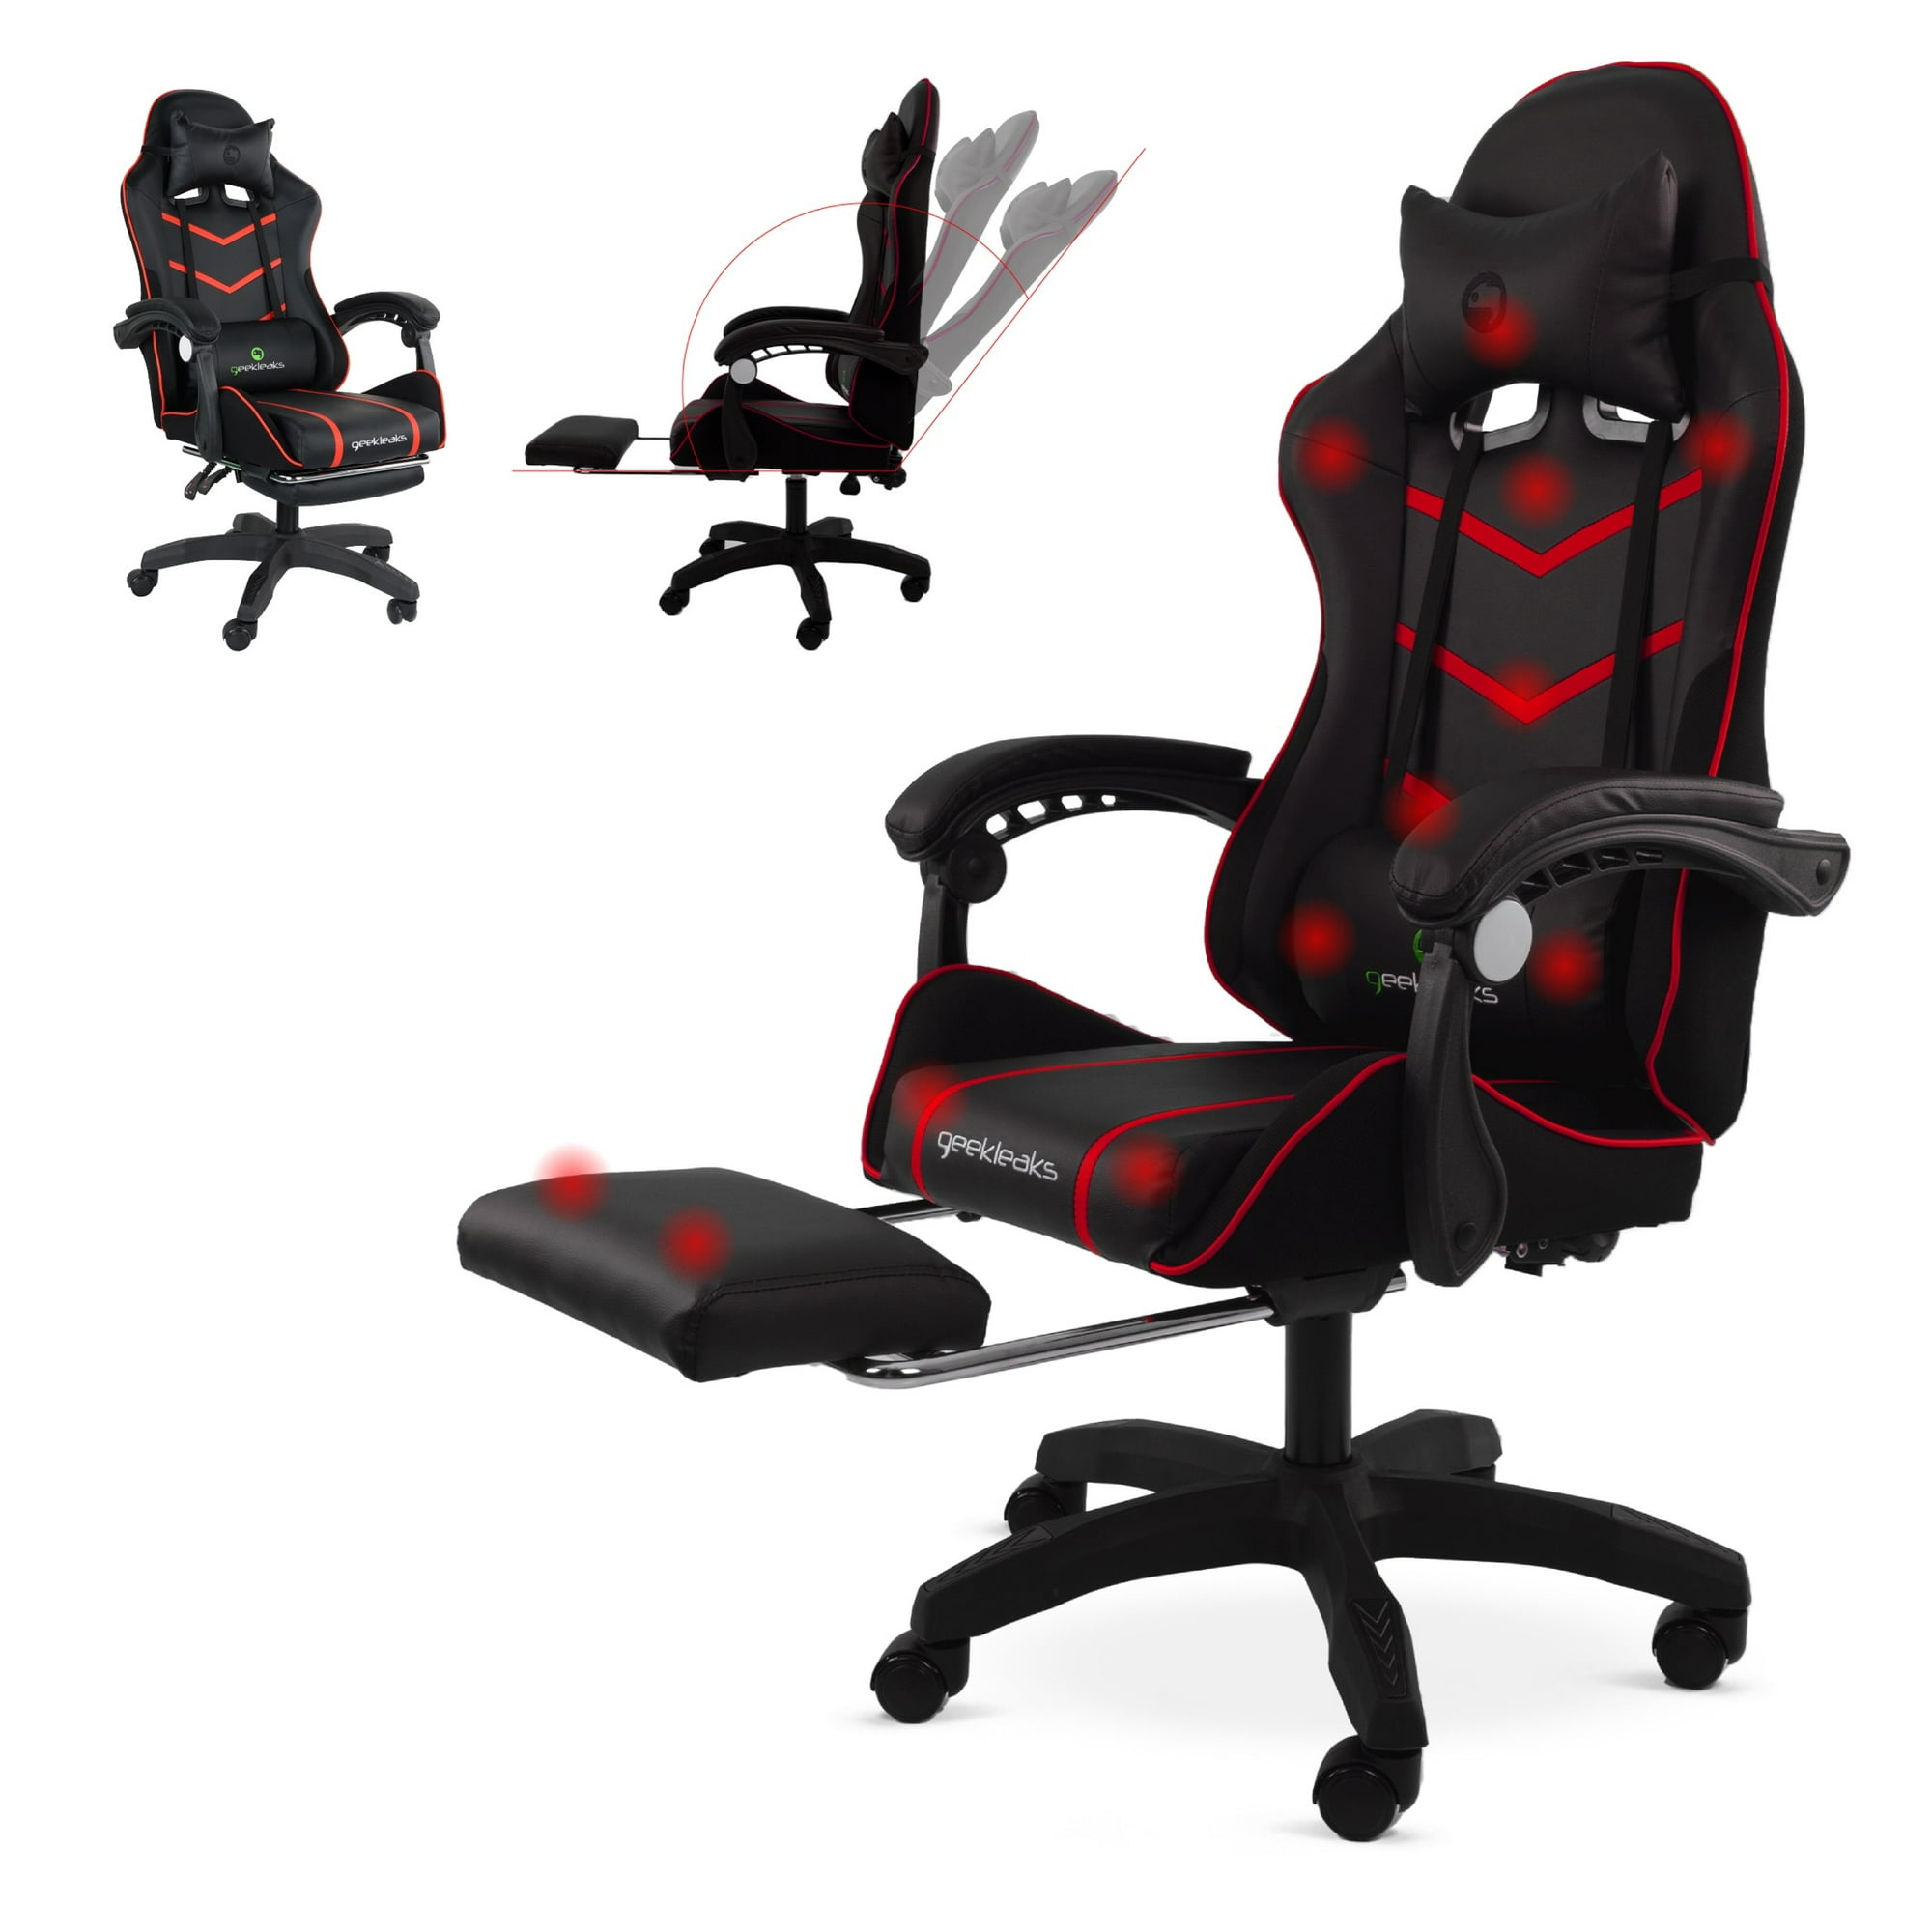 Así es la silla de oficina estilo gaming que puede ser tu